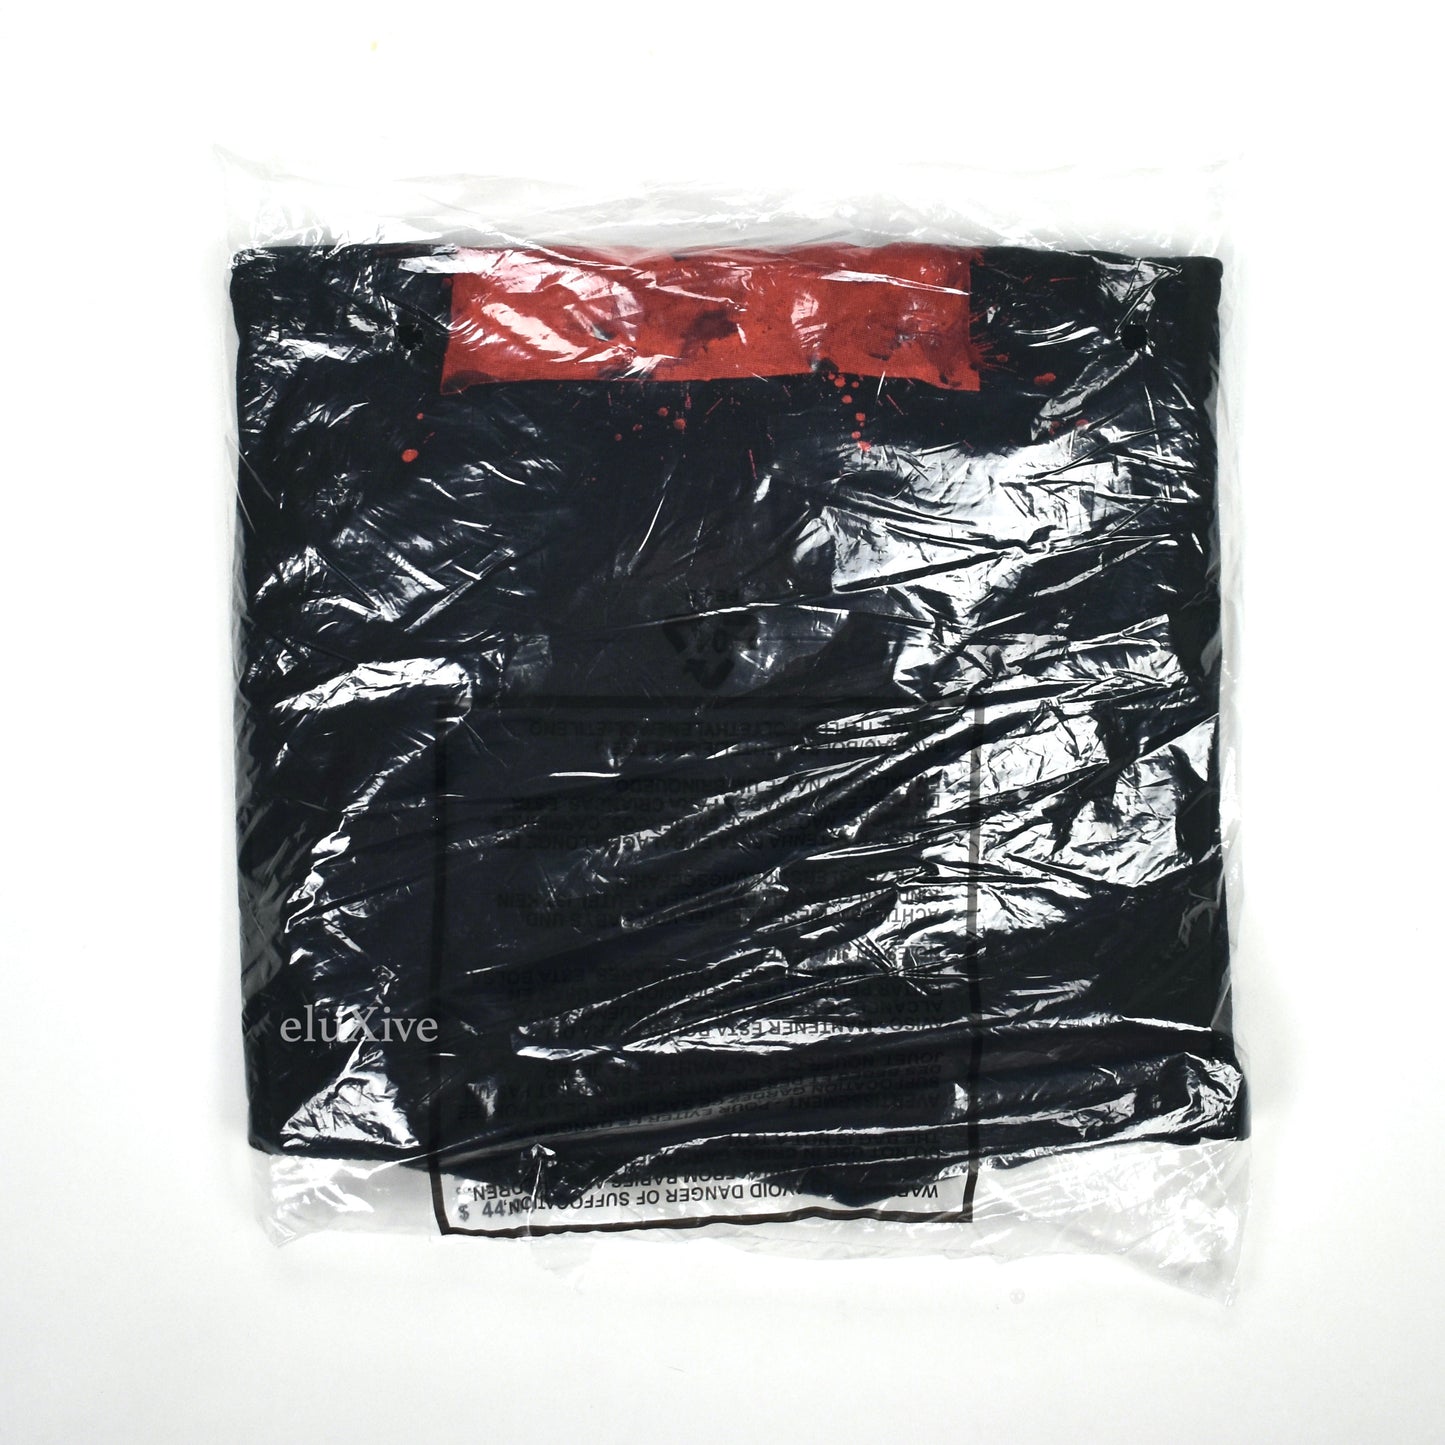 Supreme - Ralph Steadman Bloody Box Logo T-Shirt (Black)